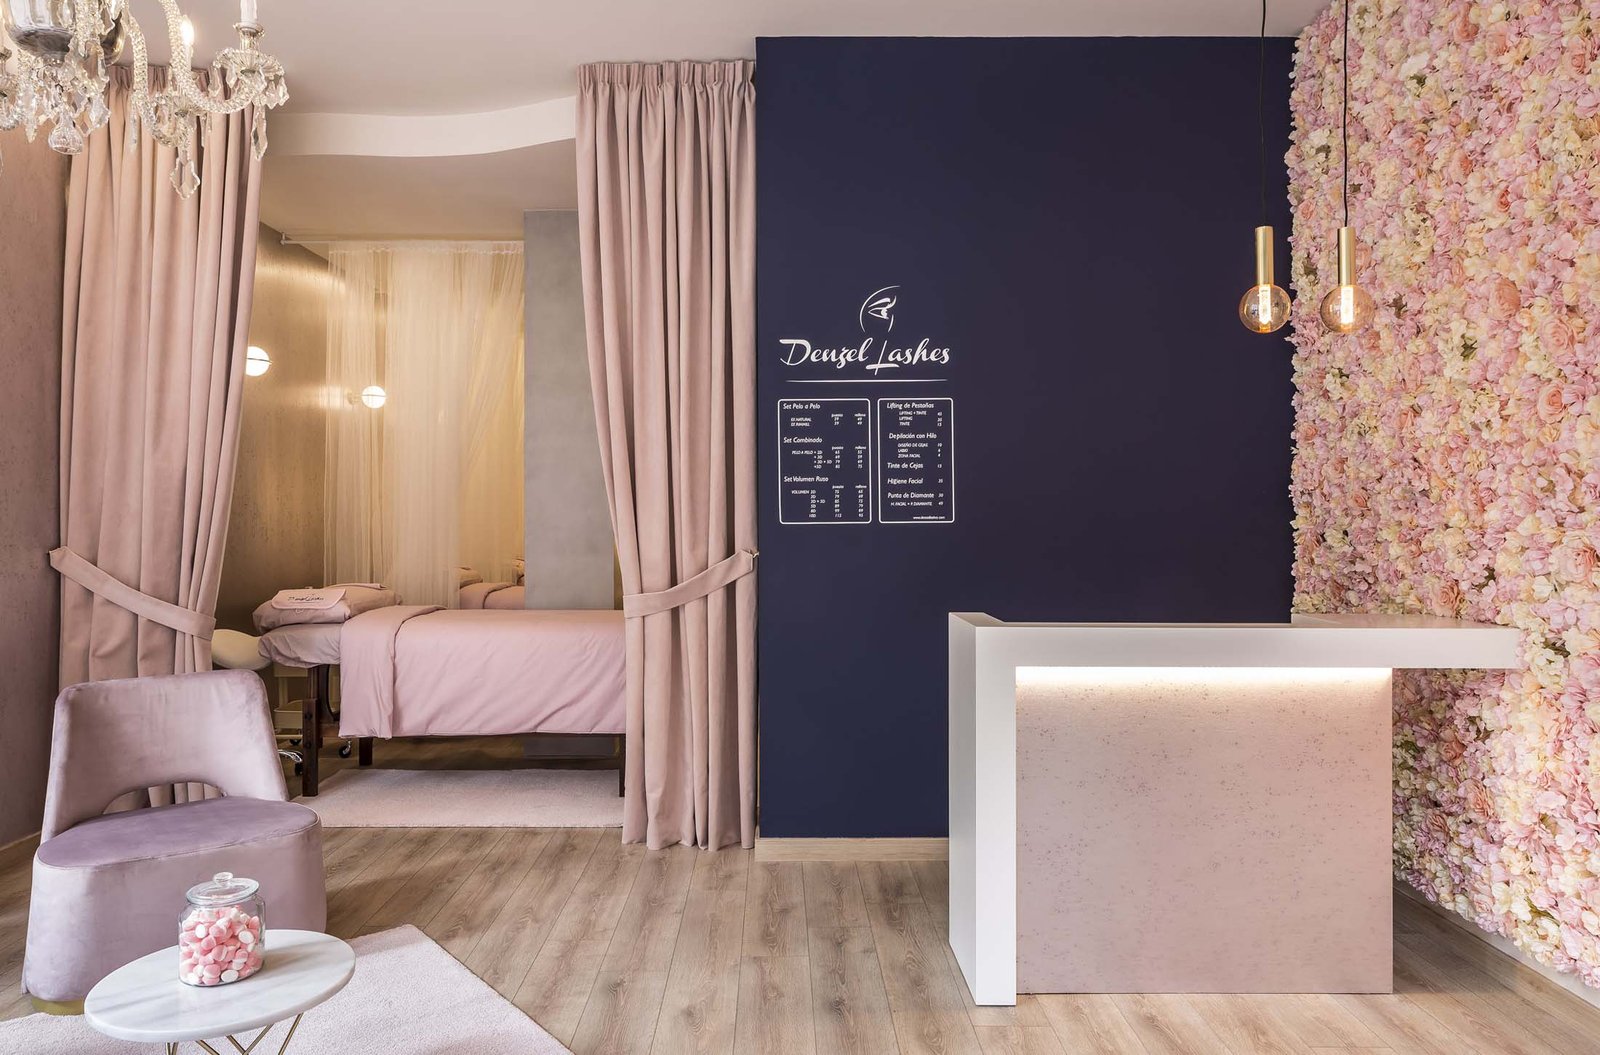 Decoración interiorismo Valencia, zona recepción, para centro de belleza uso tonos rosas en mobiliario y decoración.